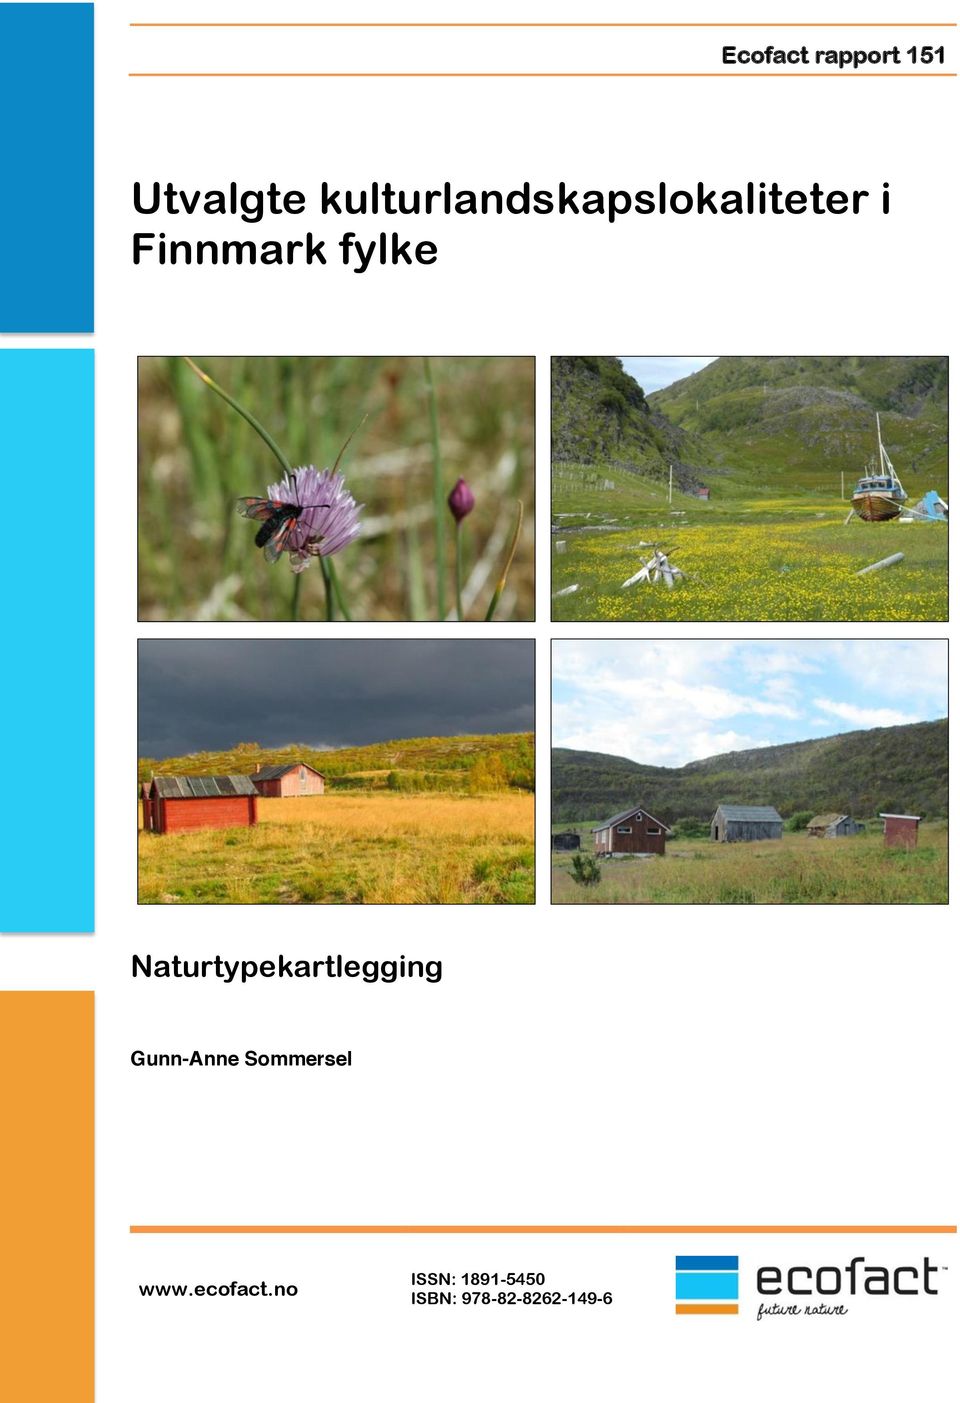 Finnmark fylke Gunn-Anne Sommersel